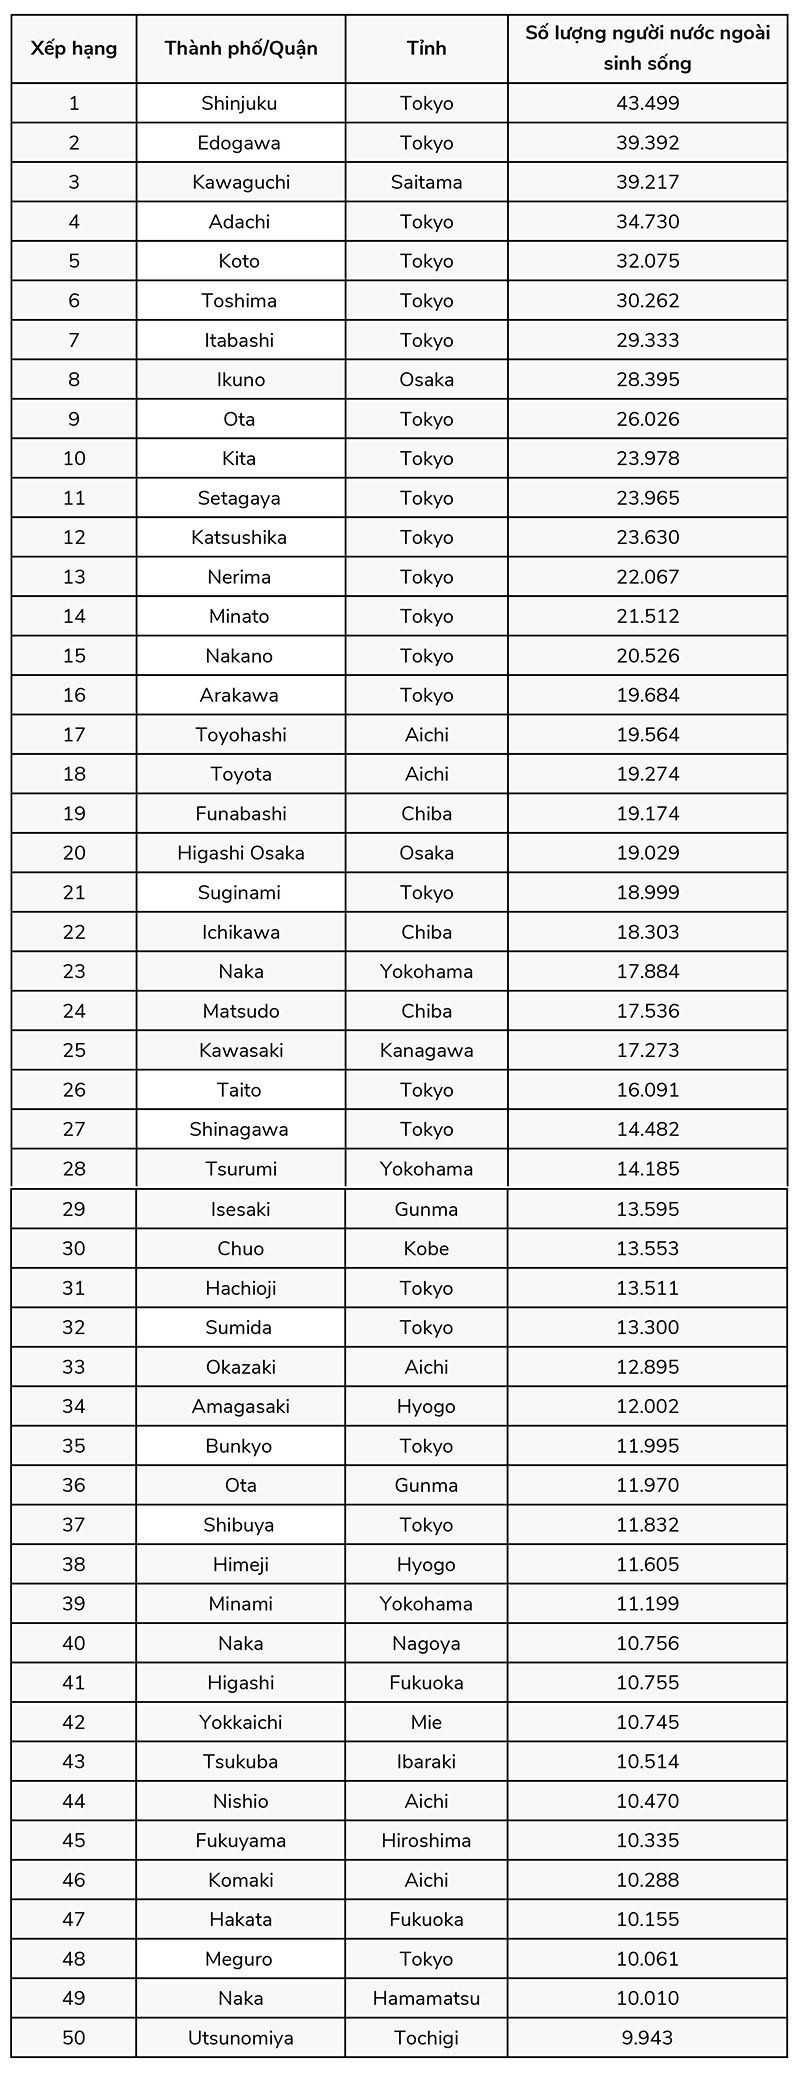 Top 100 thành phố/ quận có người nước ngoài tập trung sinh sống nhiều nhất